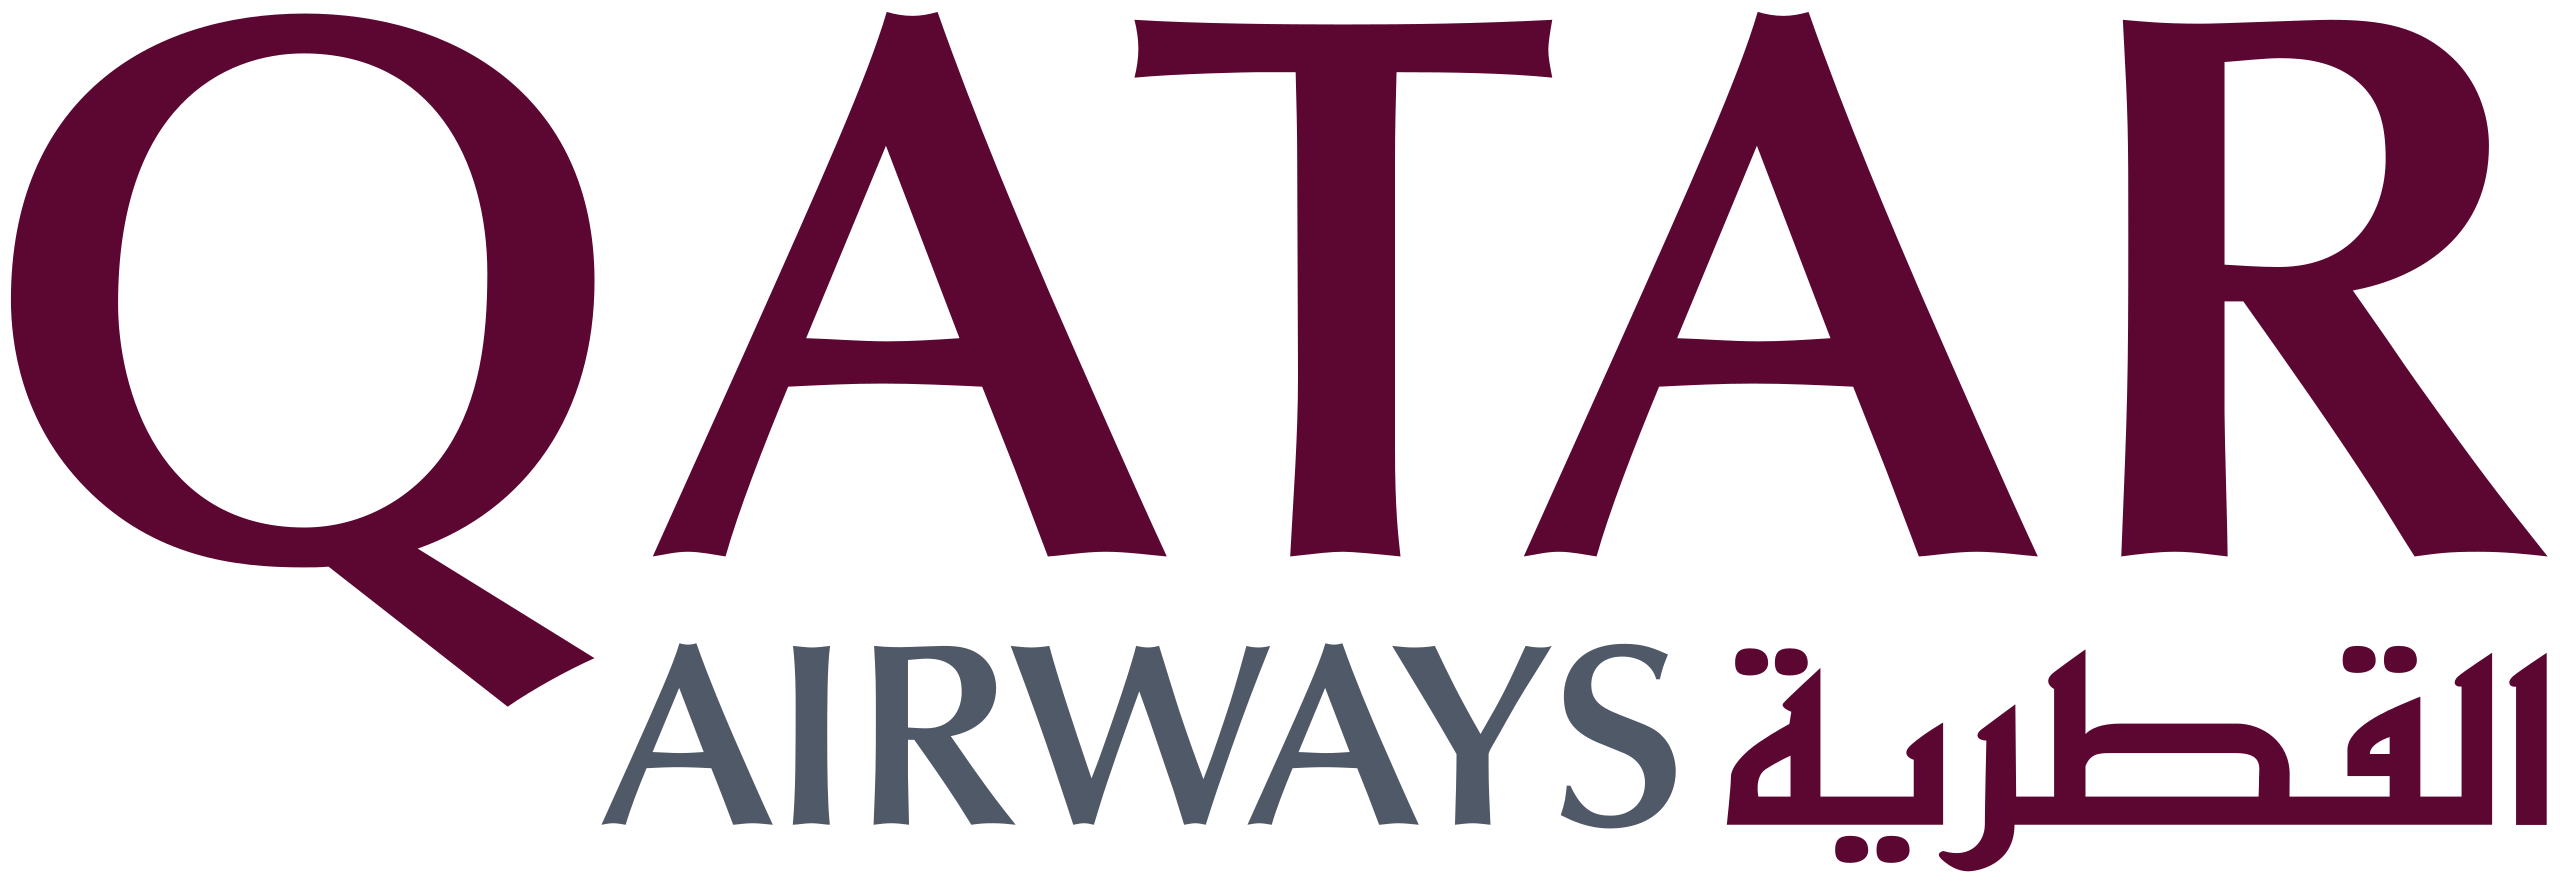 Qatar_Airways_logo.svg